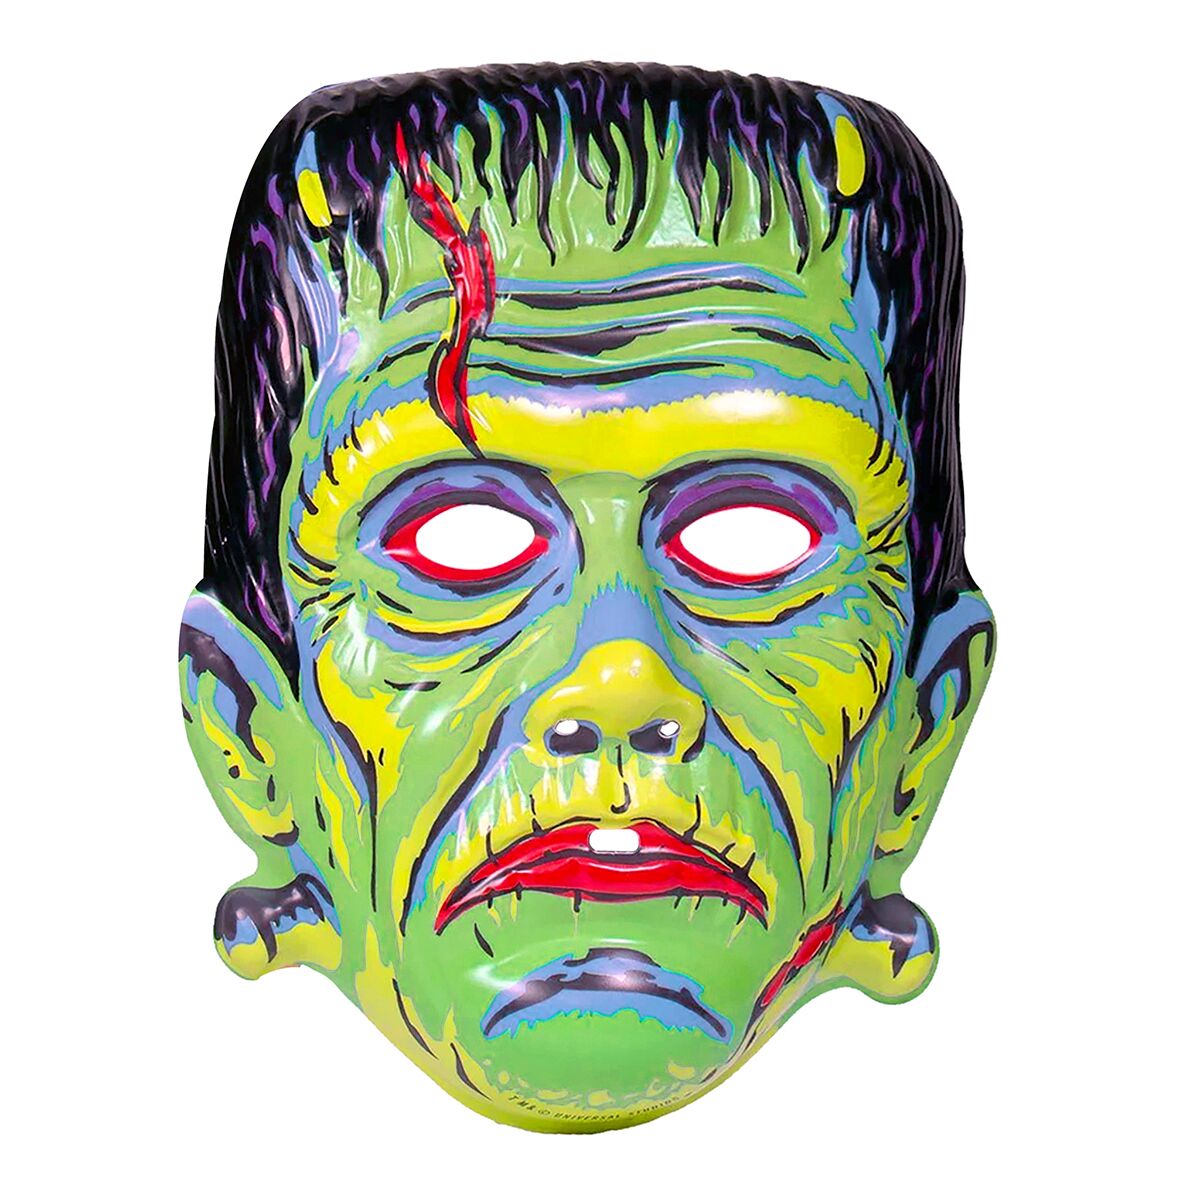 Universal Monsters Mask - Frankenstein (Green)